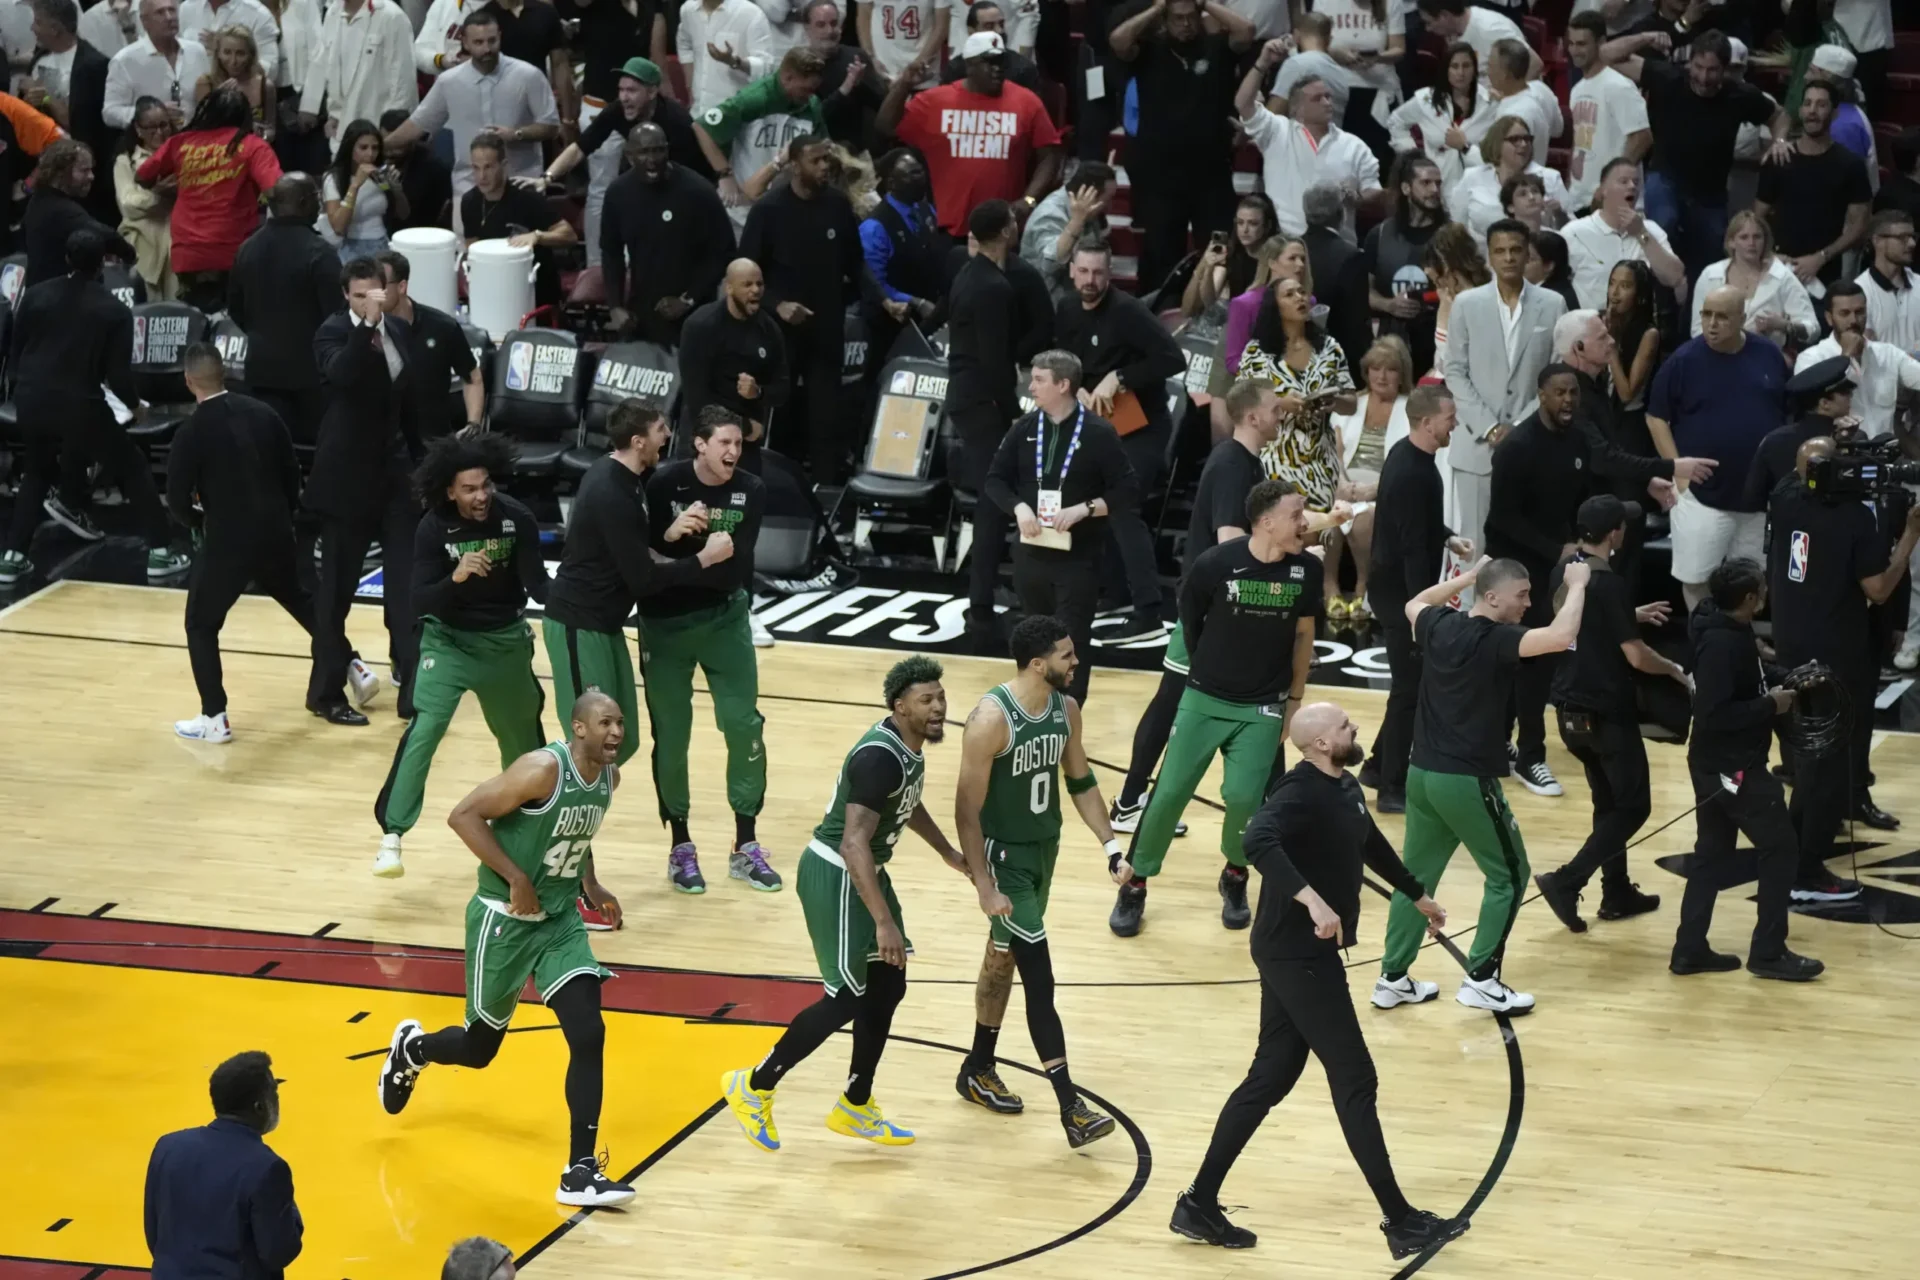 El retroceso de White cuando el tiempo expira lleva a los Celtics a superar al Heat, obliga al Juego 7 en las finales del Este